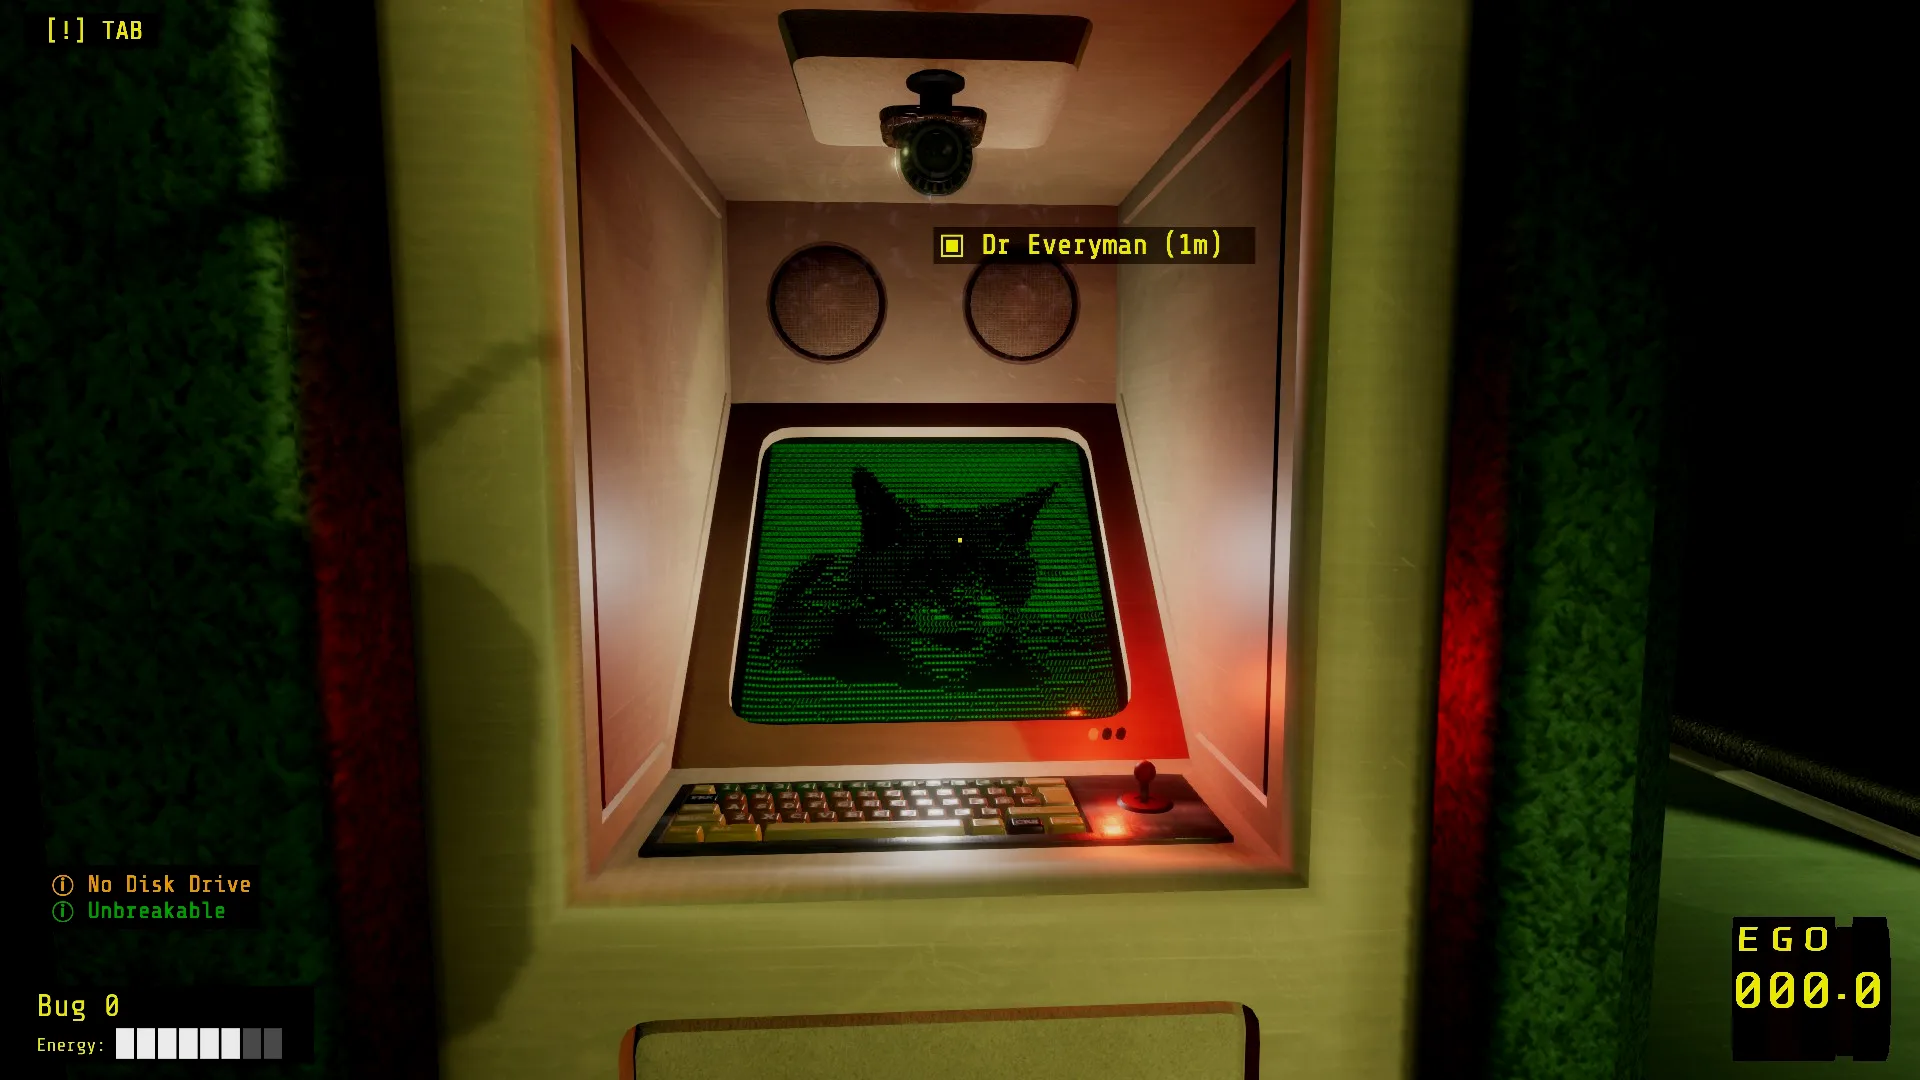 玩家获取指引的终端图标也是猫，因为转换控制终端（Ctrl Alt Terminal）的缩写是CAT